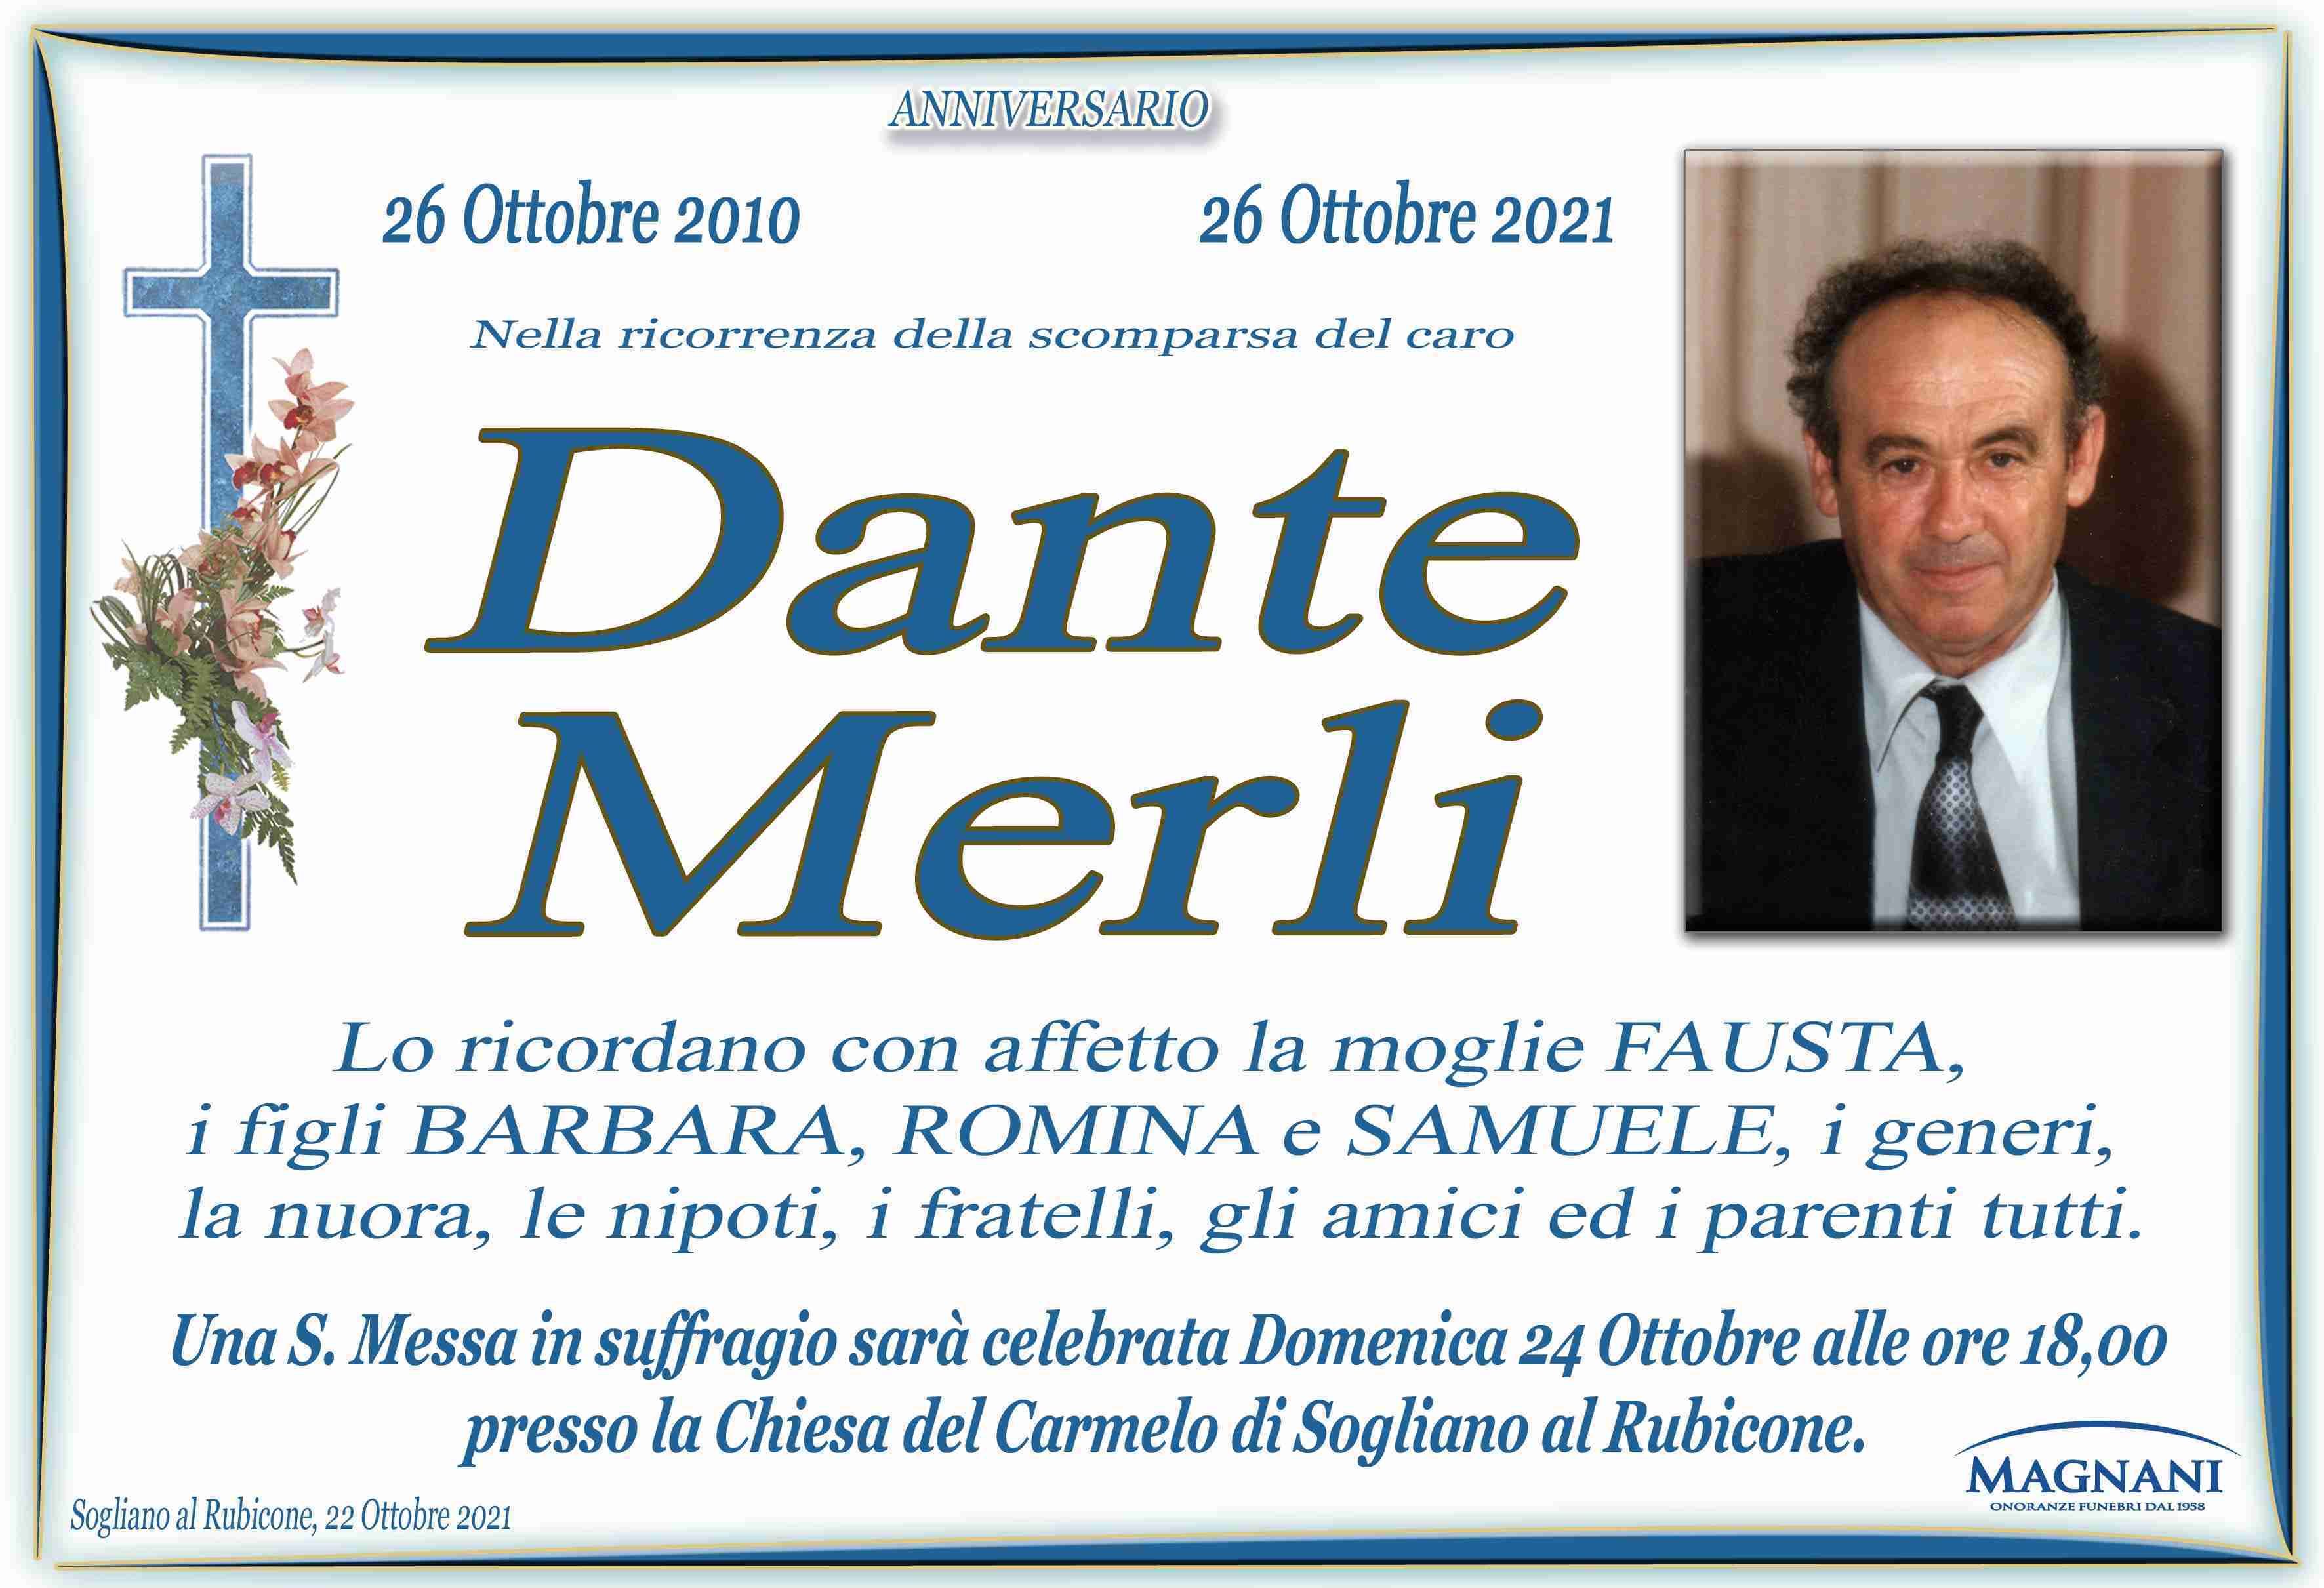 Dante Merli